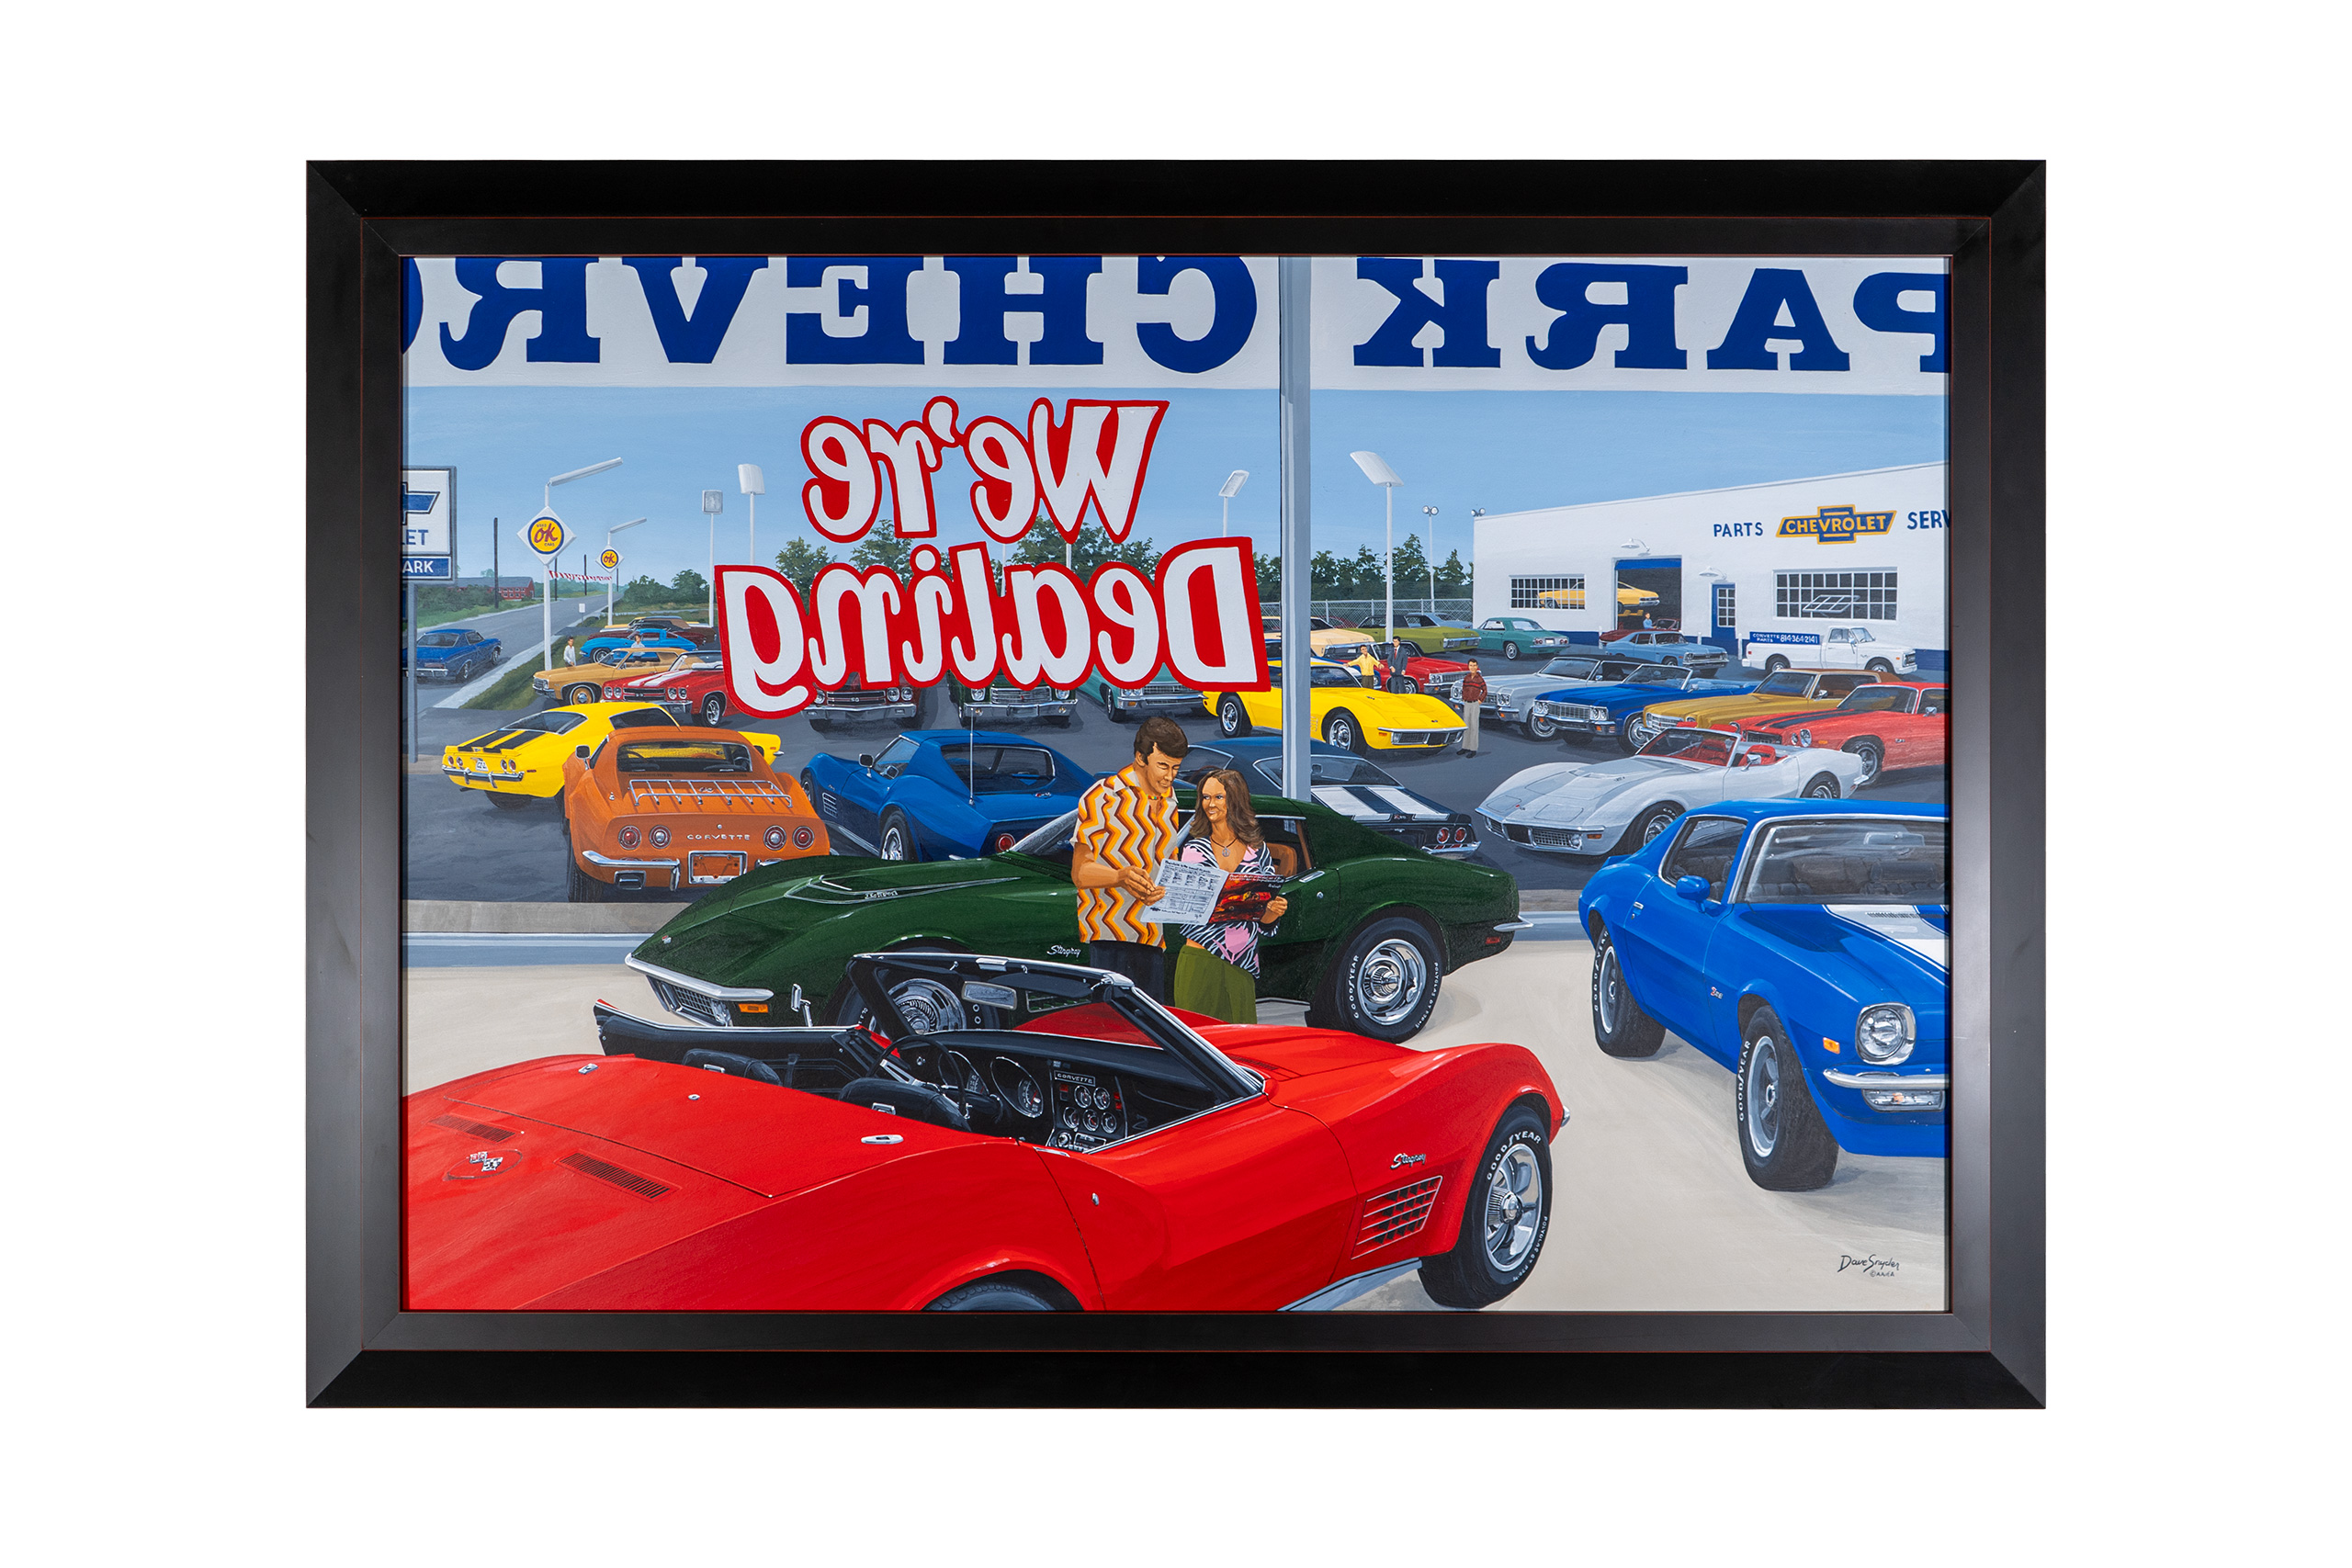 C3 1970 Chevrolet Corvette Delivery Day: The 70's Original Framed Artwork - David Snyder